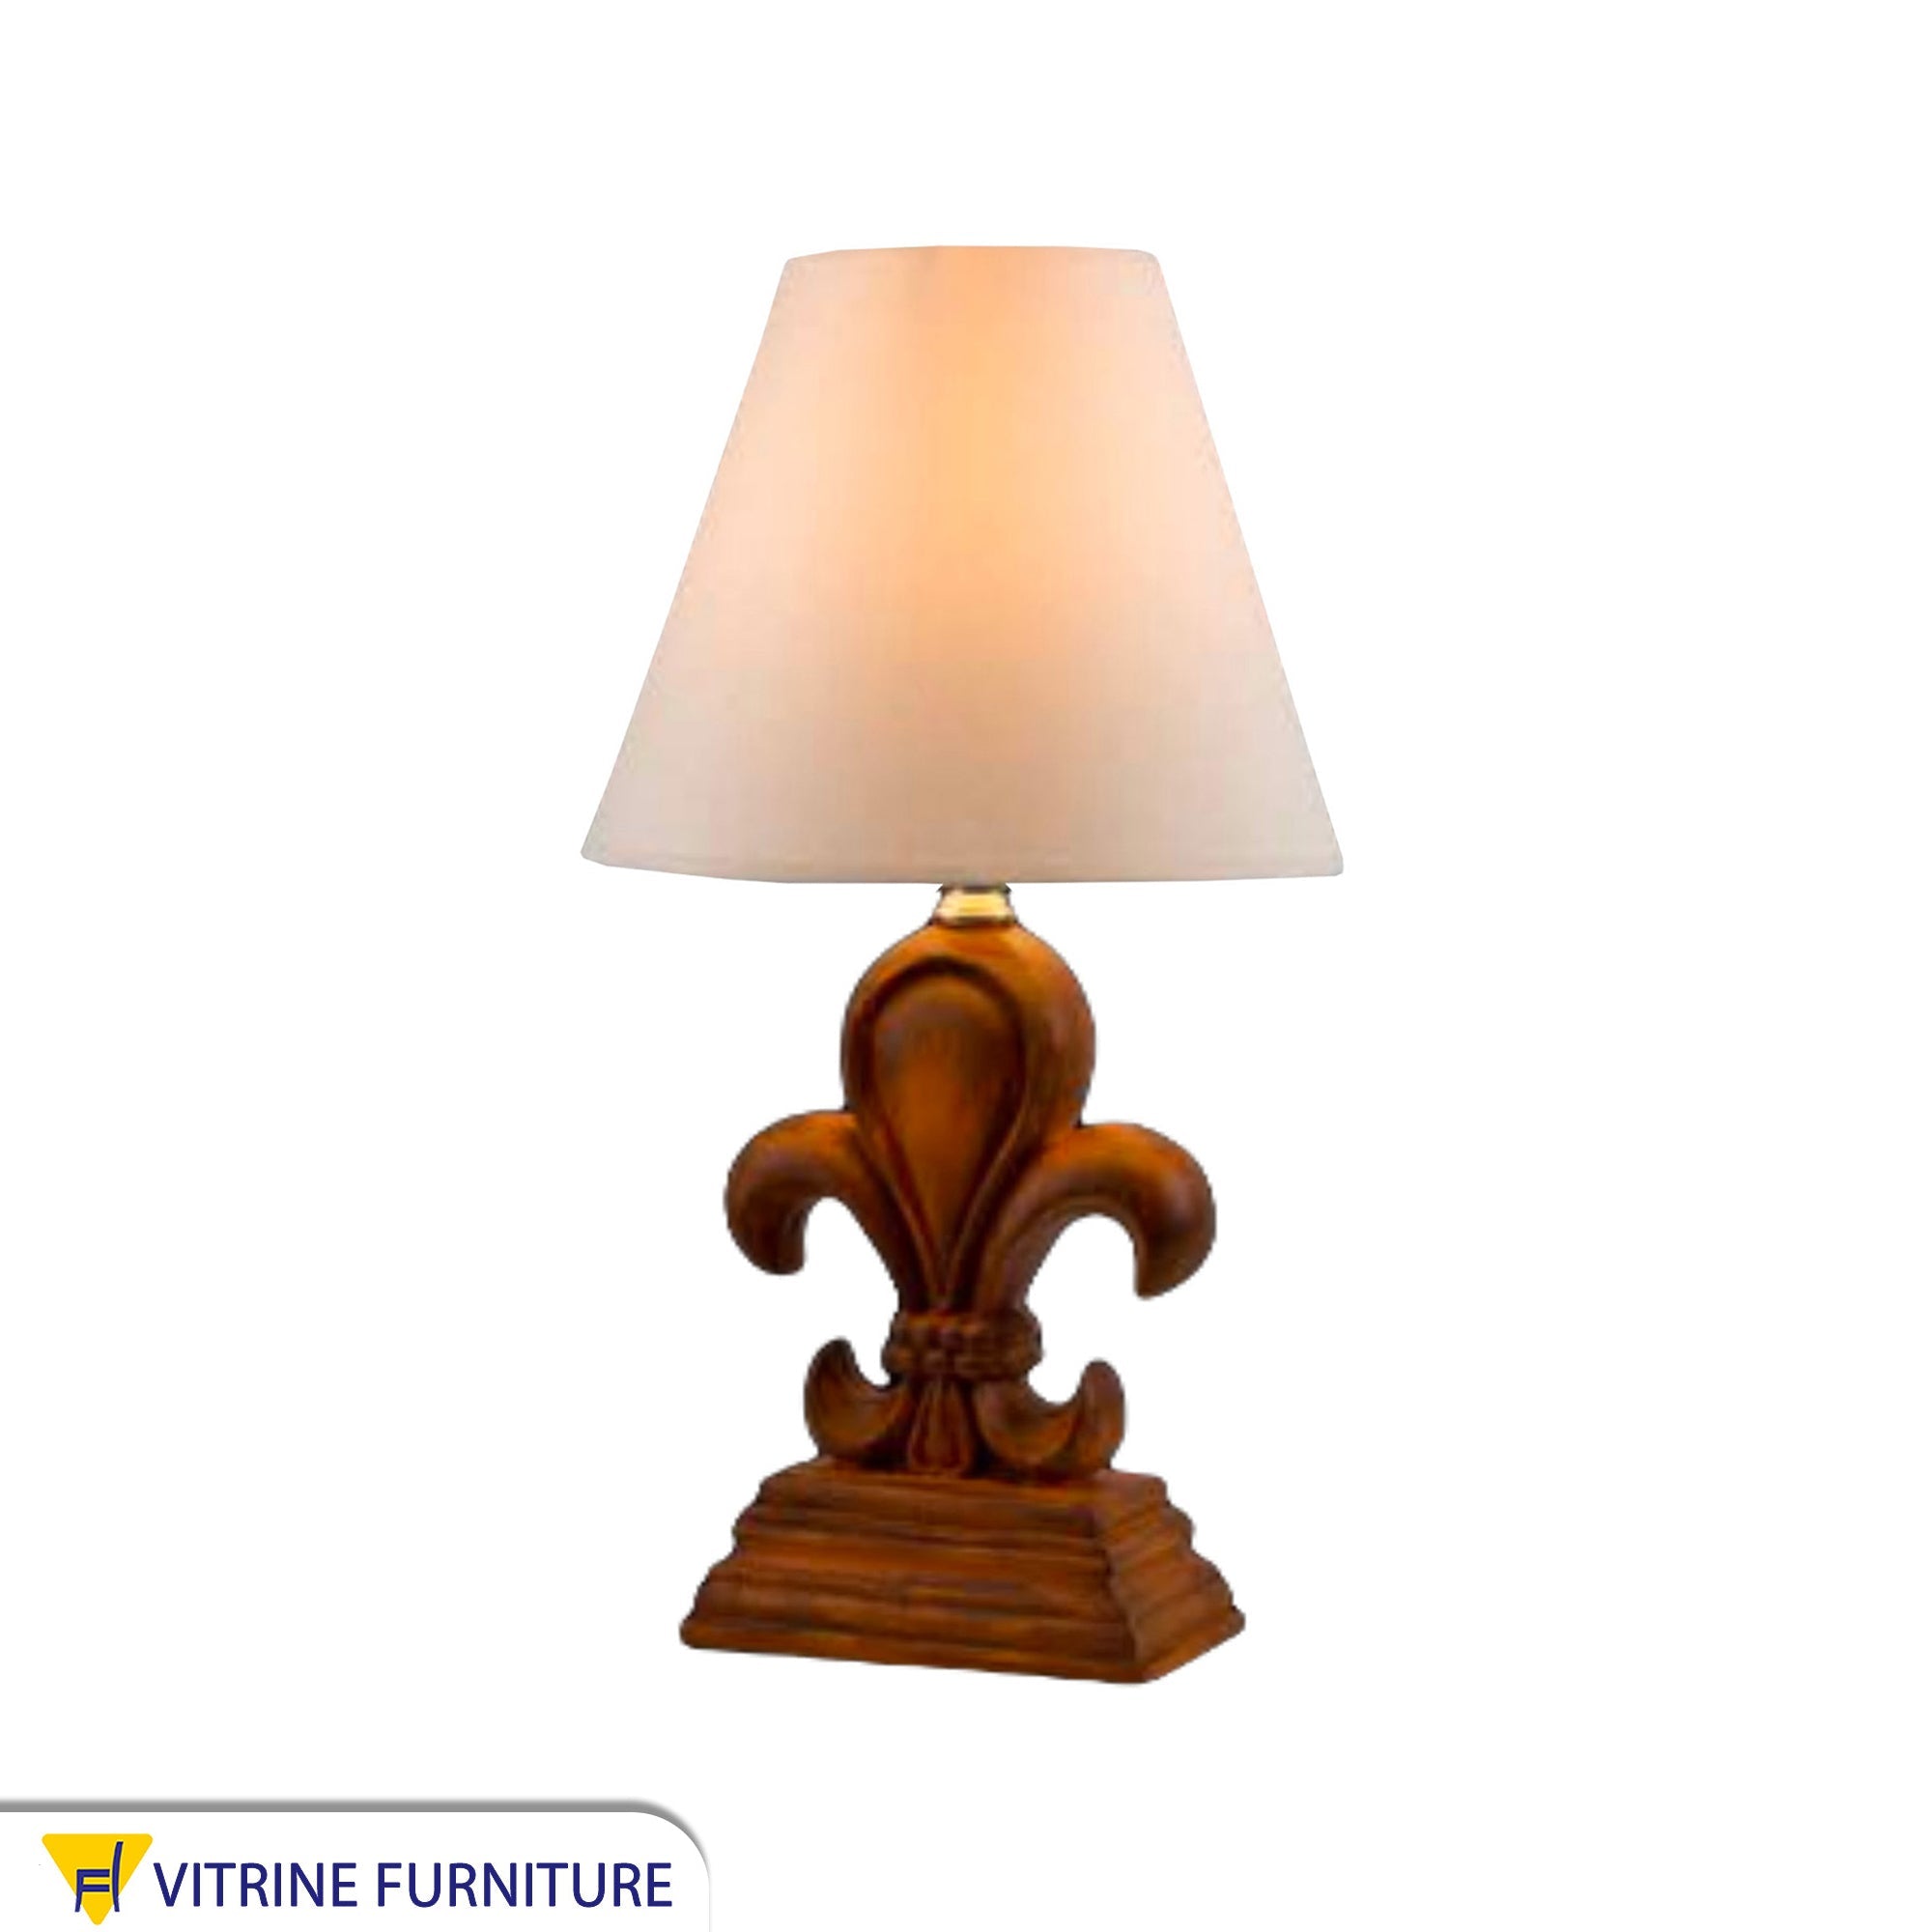 Royal table lamp